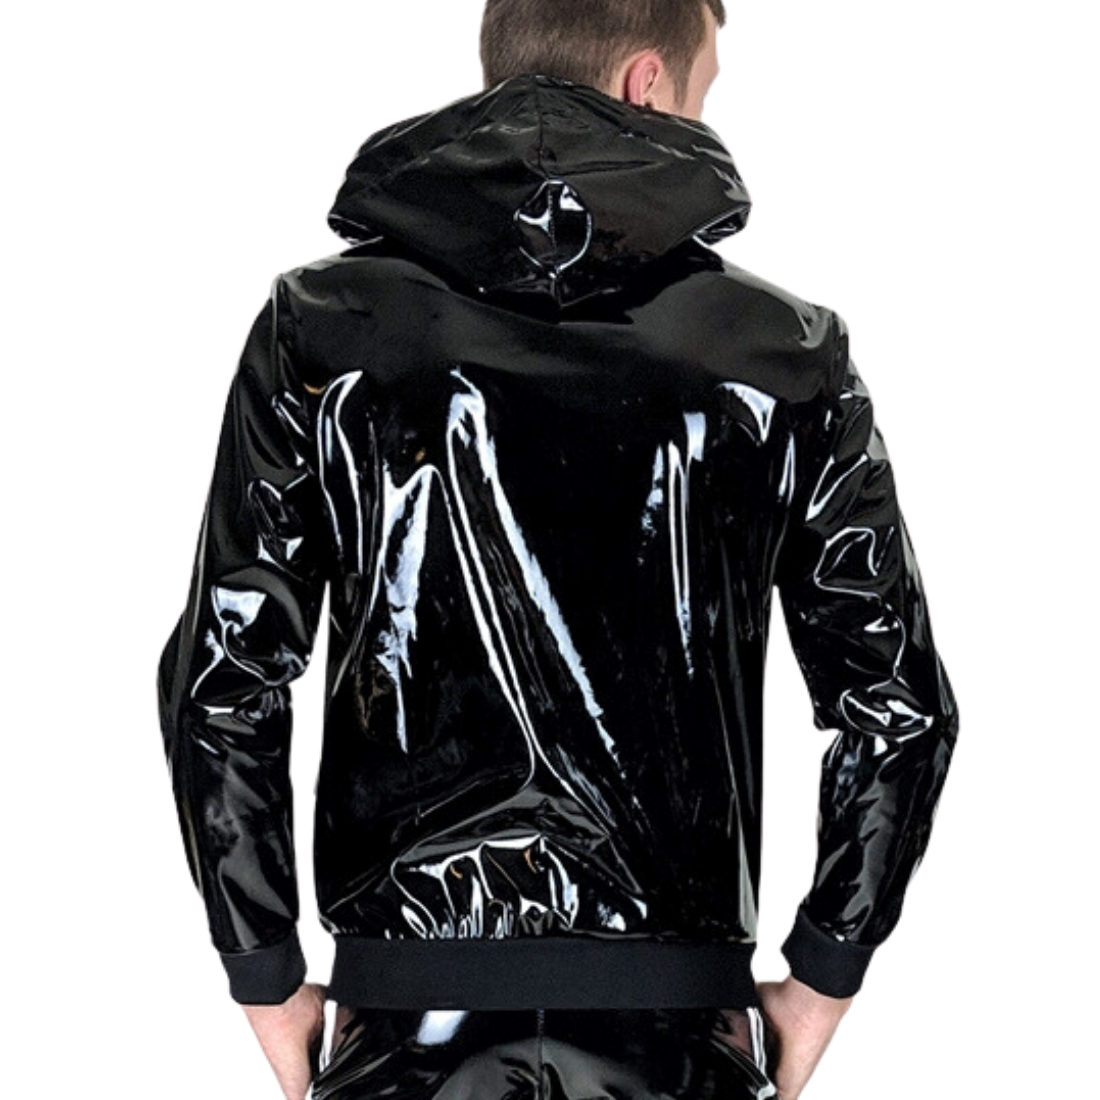 Zwarte PVC tracksuit jacket met witte strepen van Mr. Riegillio en te koop bij Flavourez.